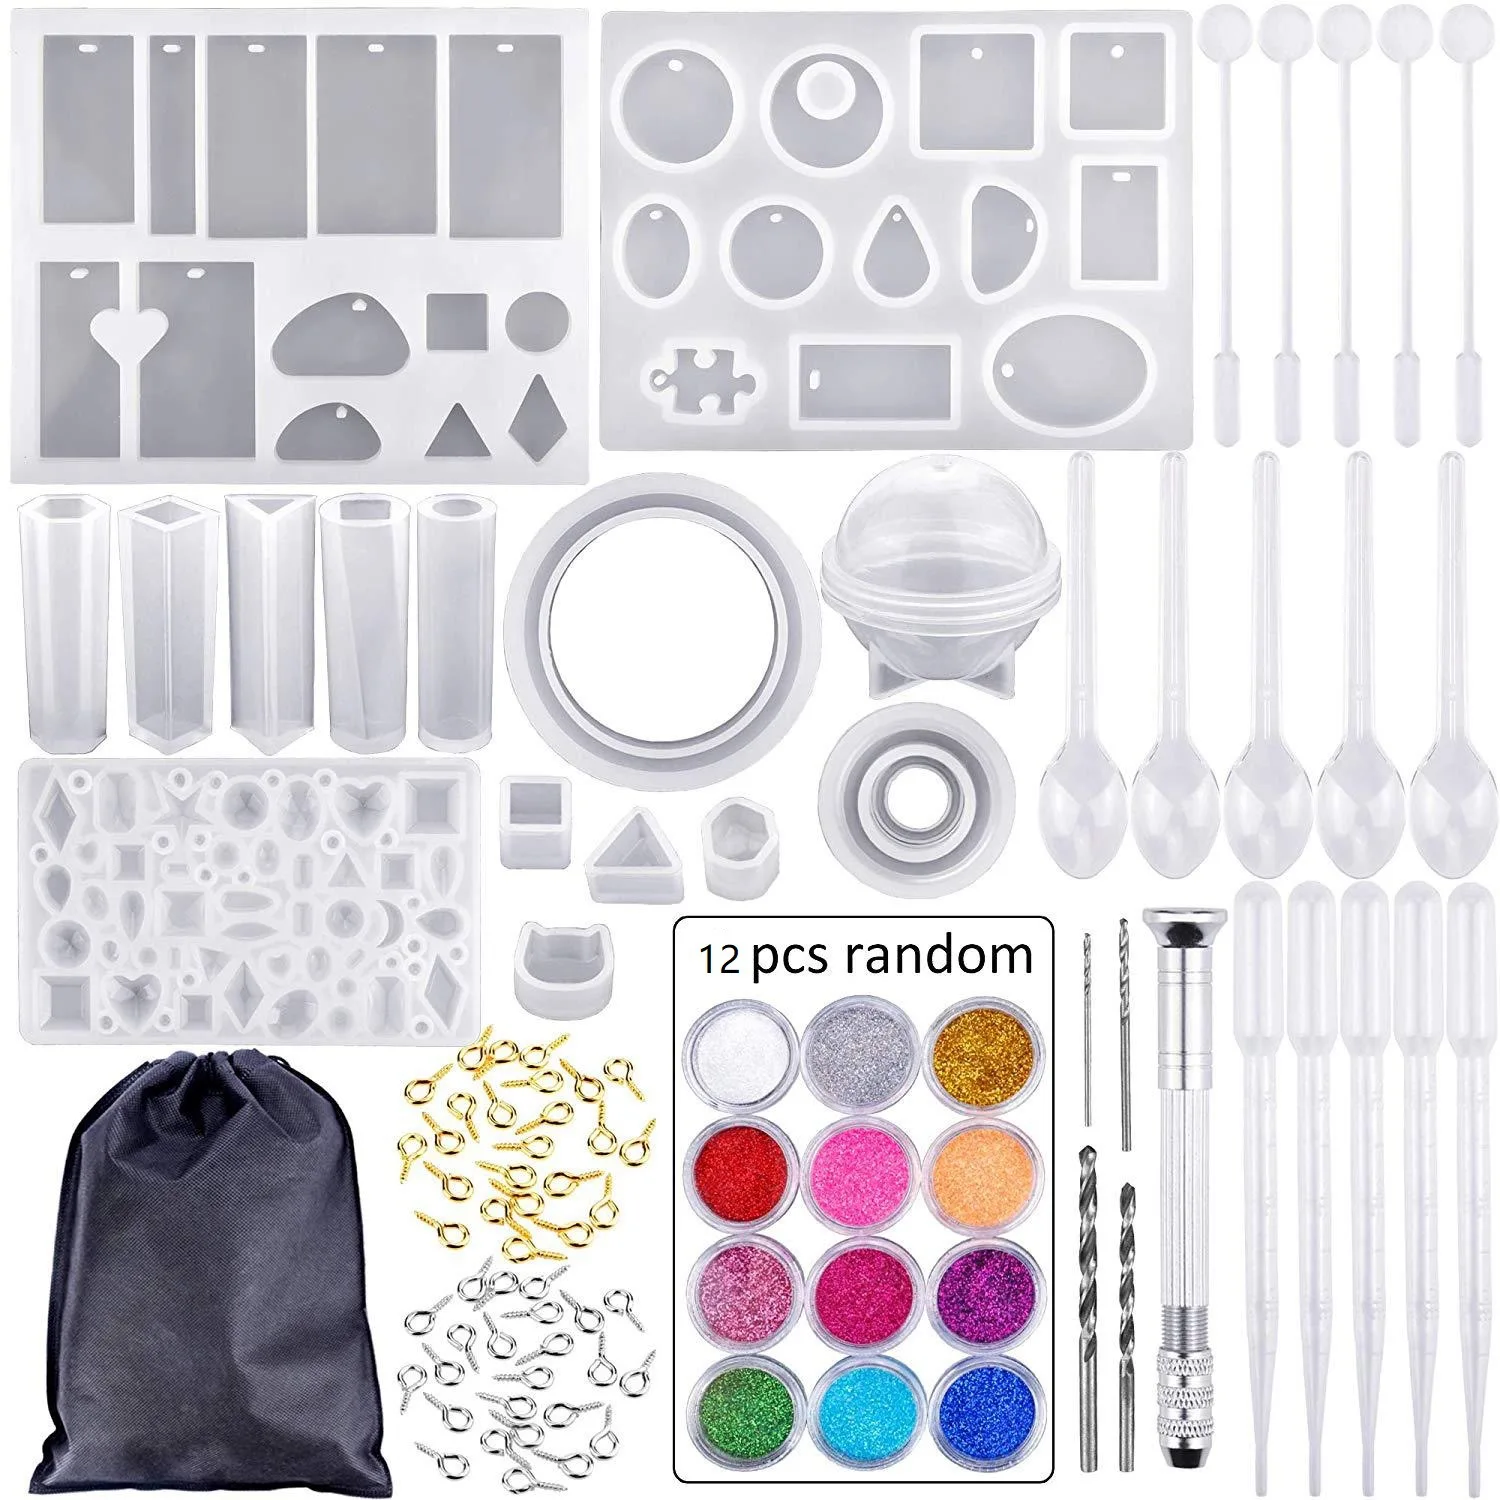 epoxy resin kit for beginners diy